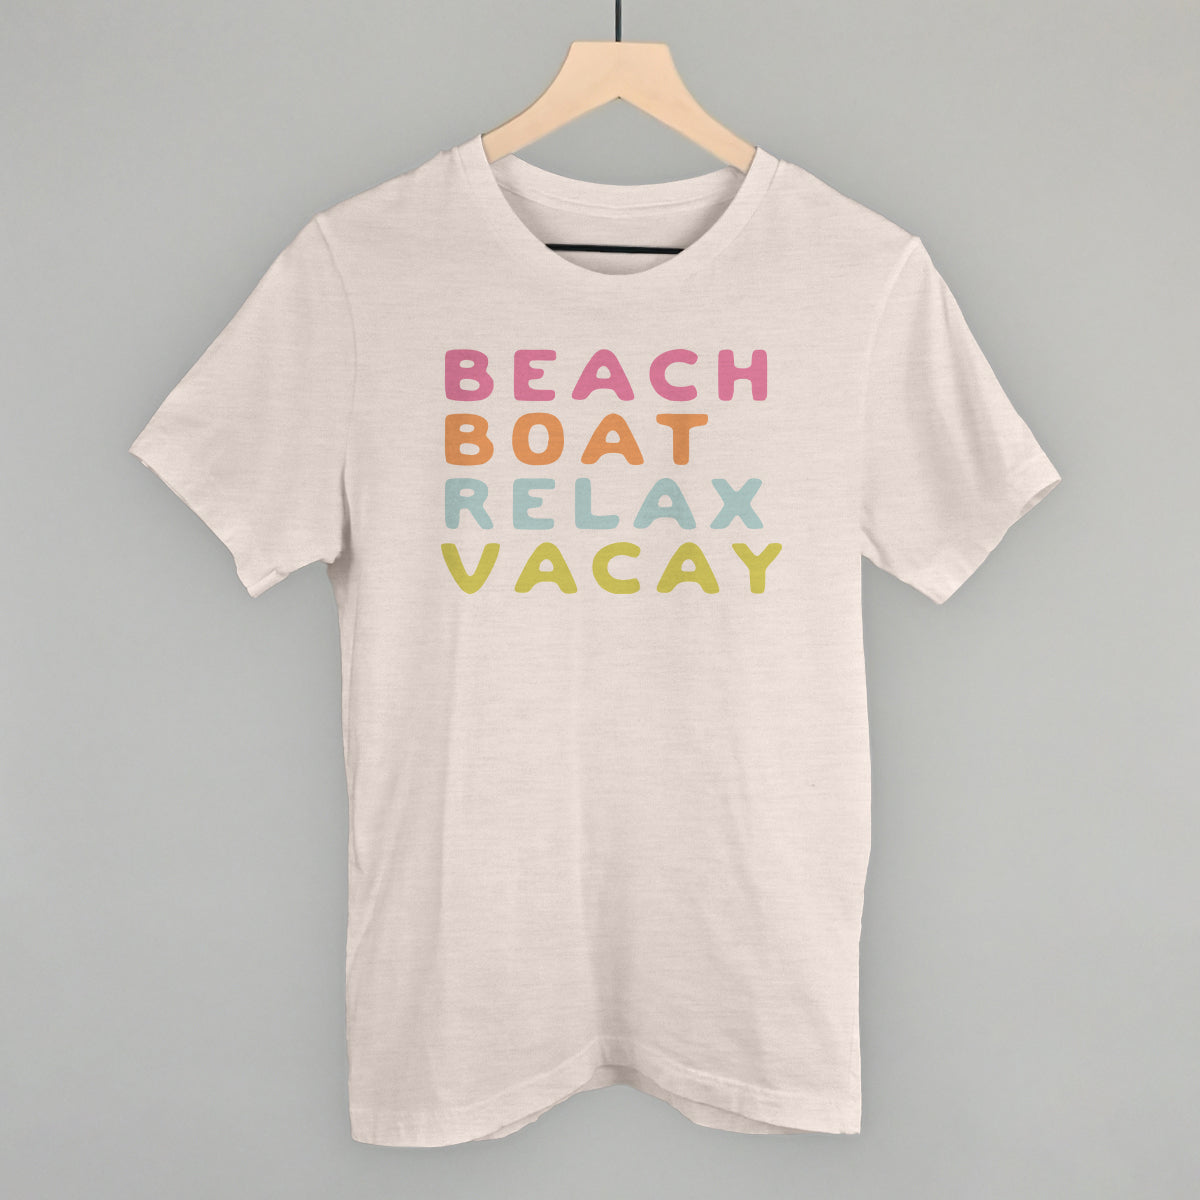 Beach Boat Relax Vacay